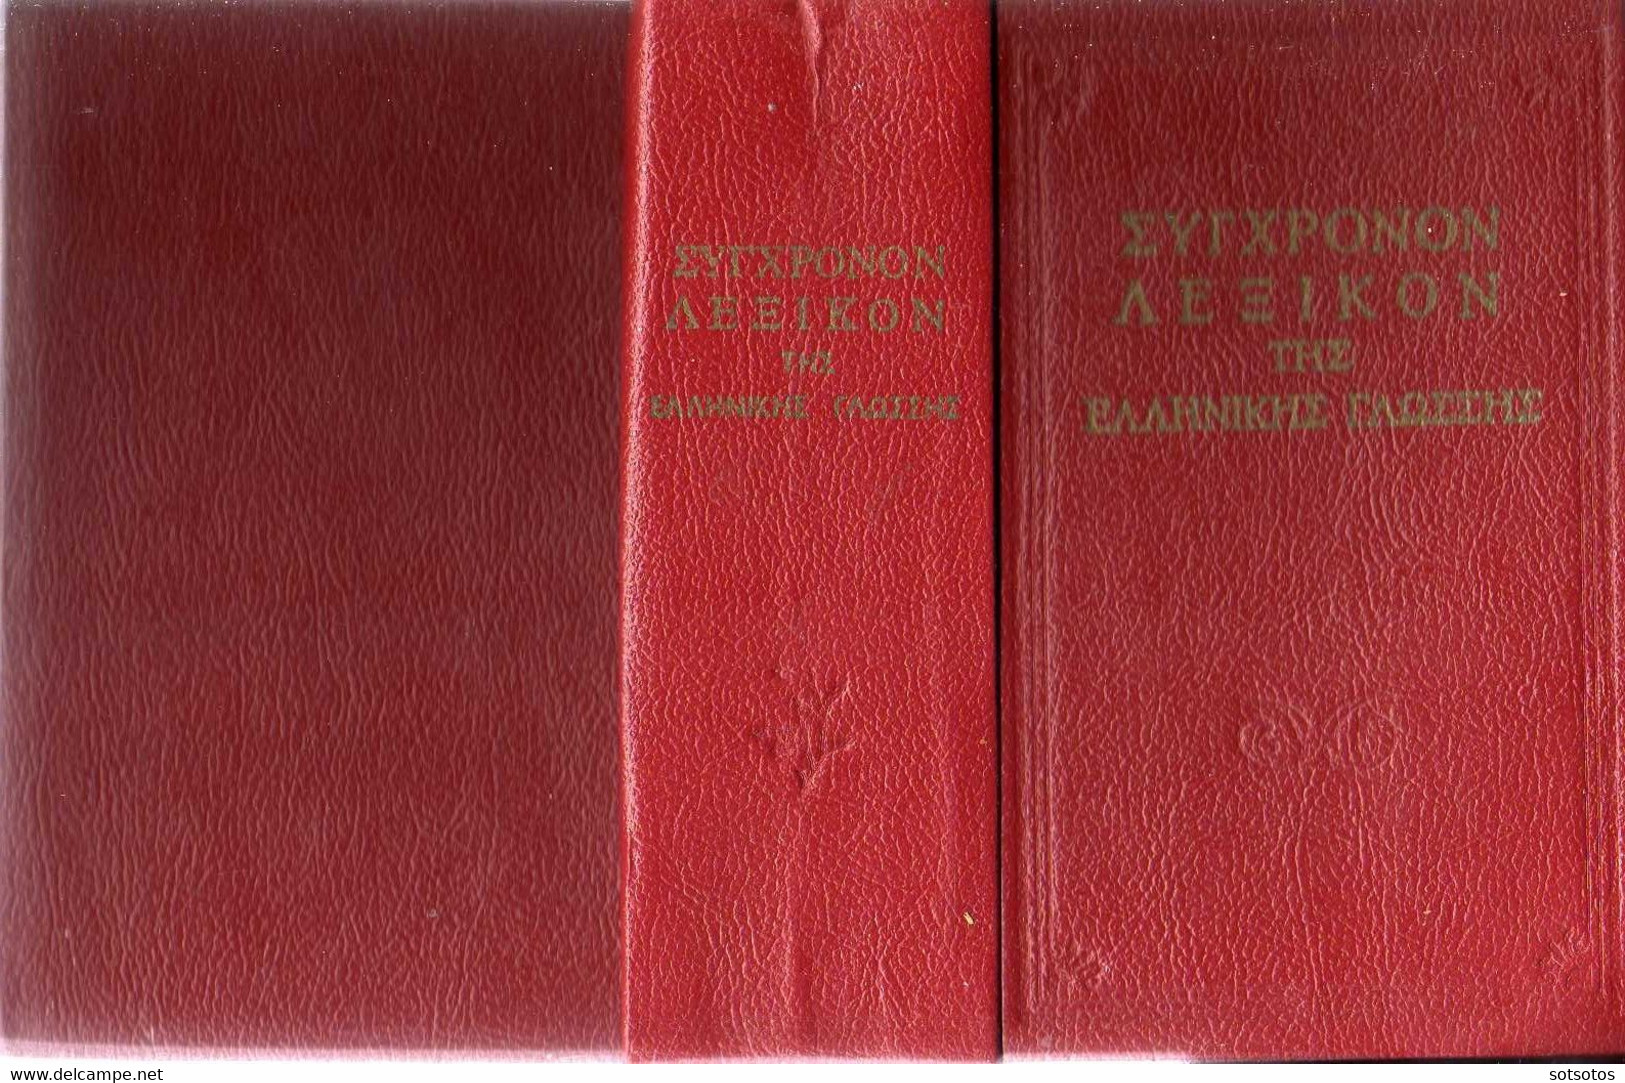 ΣΥΓΧΡΟΝΟΝ ΛΕΞΙΚΟΝ της ΕΛΛΗΝΙΚΗΣ ΓΛΩΣΣΗΣ (Καθαρευούσης – Δημοτικής): ΟΡΘΟΓΡΑΦΙΚΟΝ - ΕΡΜΗΝΕΥΤΙΚΟΝ - Εκδ. Άτλας (1960) - Dictionnaires